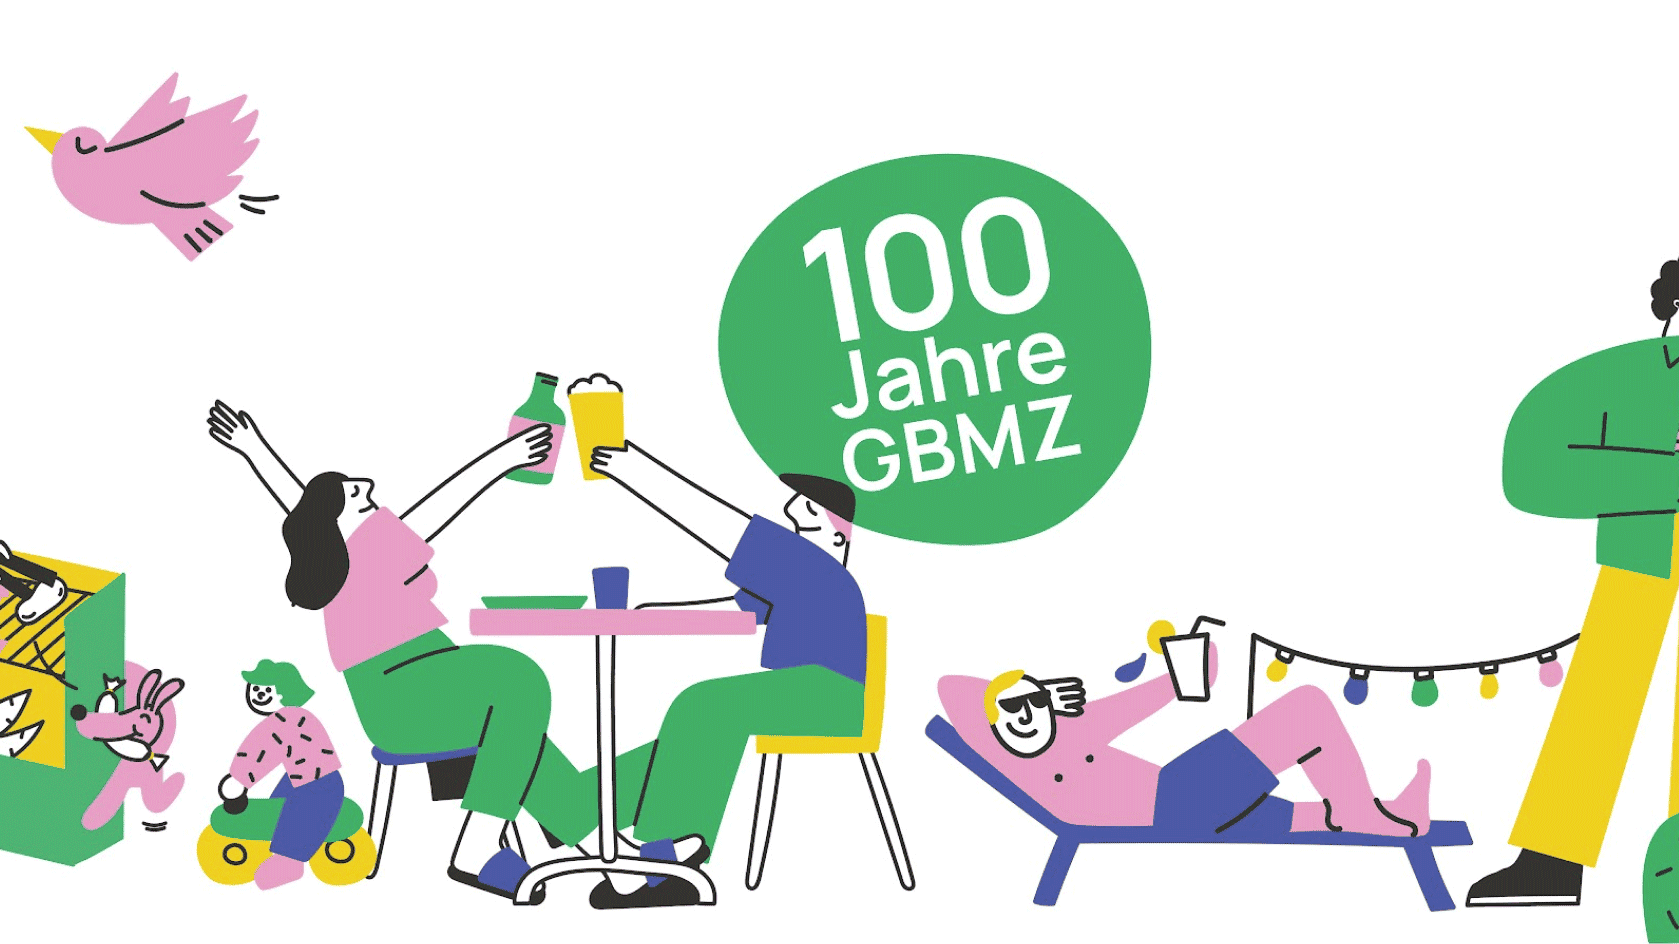 gbmz genossenschaft - Wir feiern 100 Jahre GBMZ